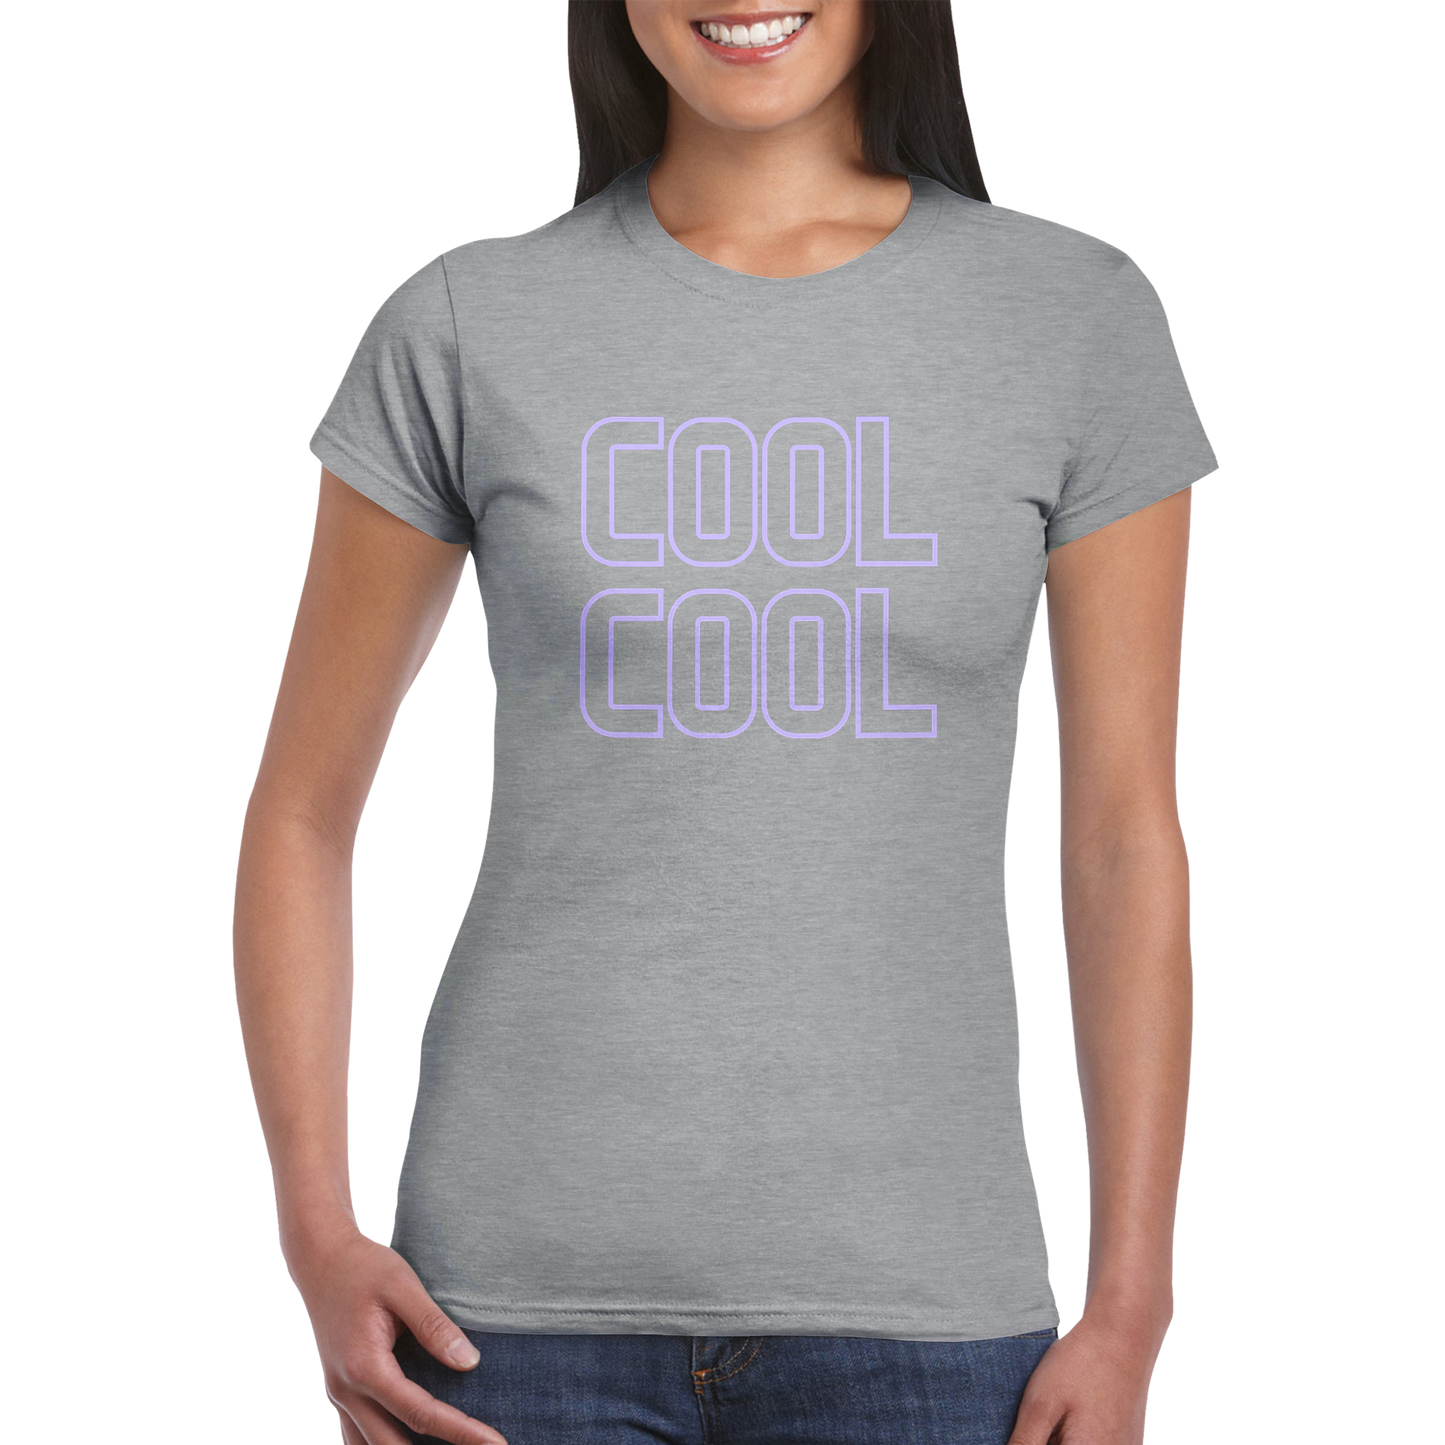 COOL COOL Classic Womens Crewneck T-Shirt